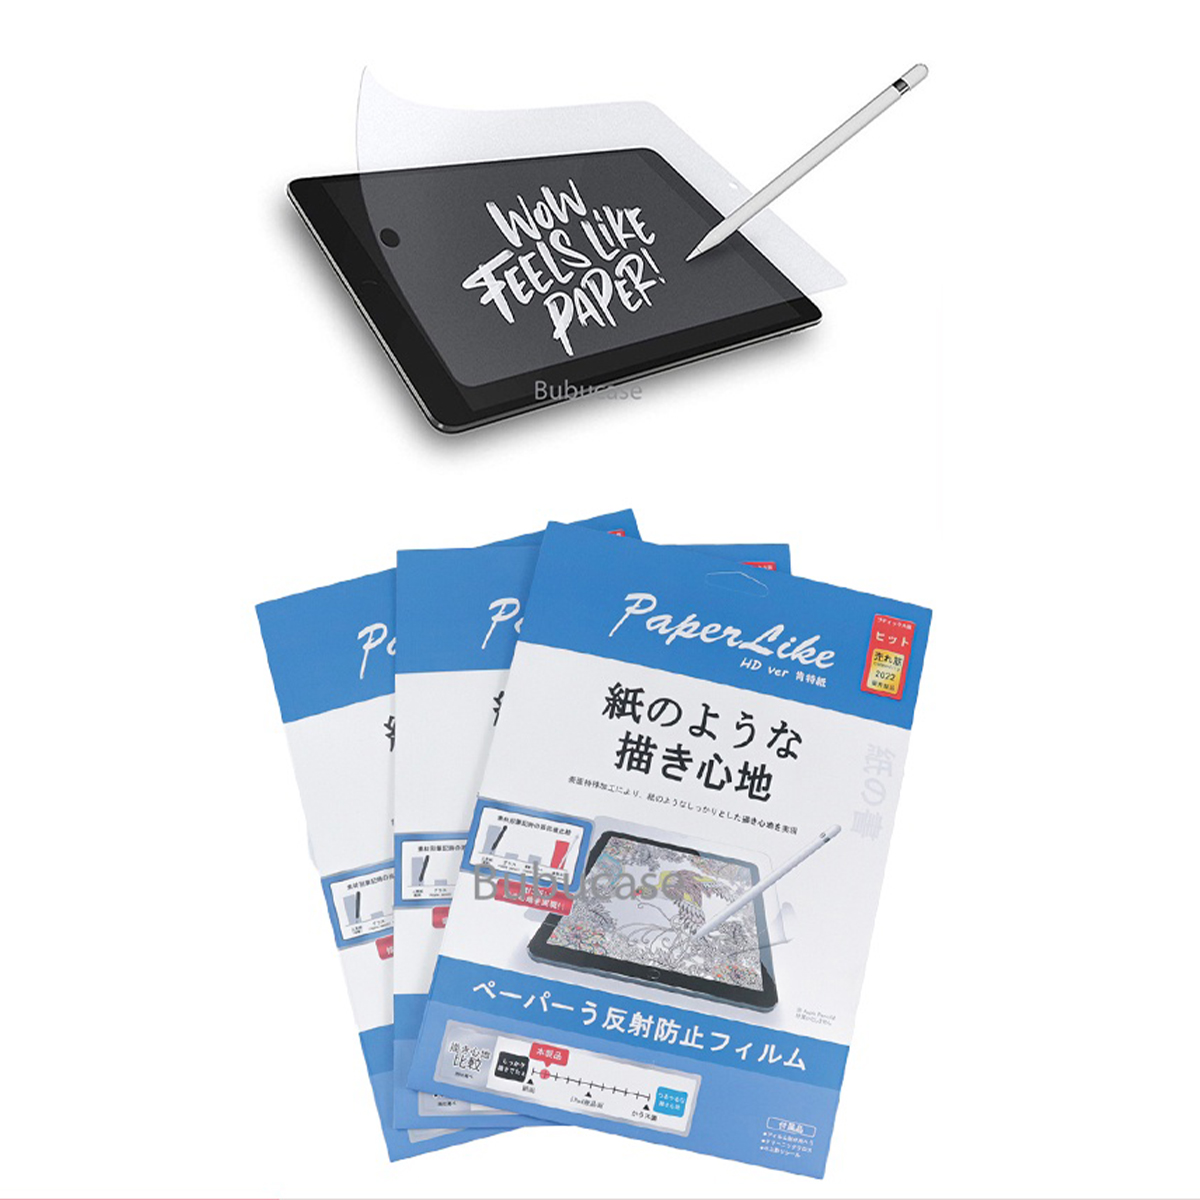 Miếng Dán Màn Hình Cho iPad Paperlike Hàng Nhật - Không Bám Vân Tay, Chống Chói, Cho Cảm Giác Viết Vẽ Như Trên Giấy Thật